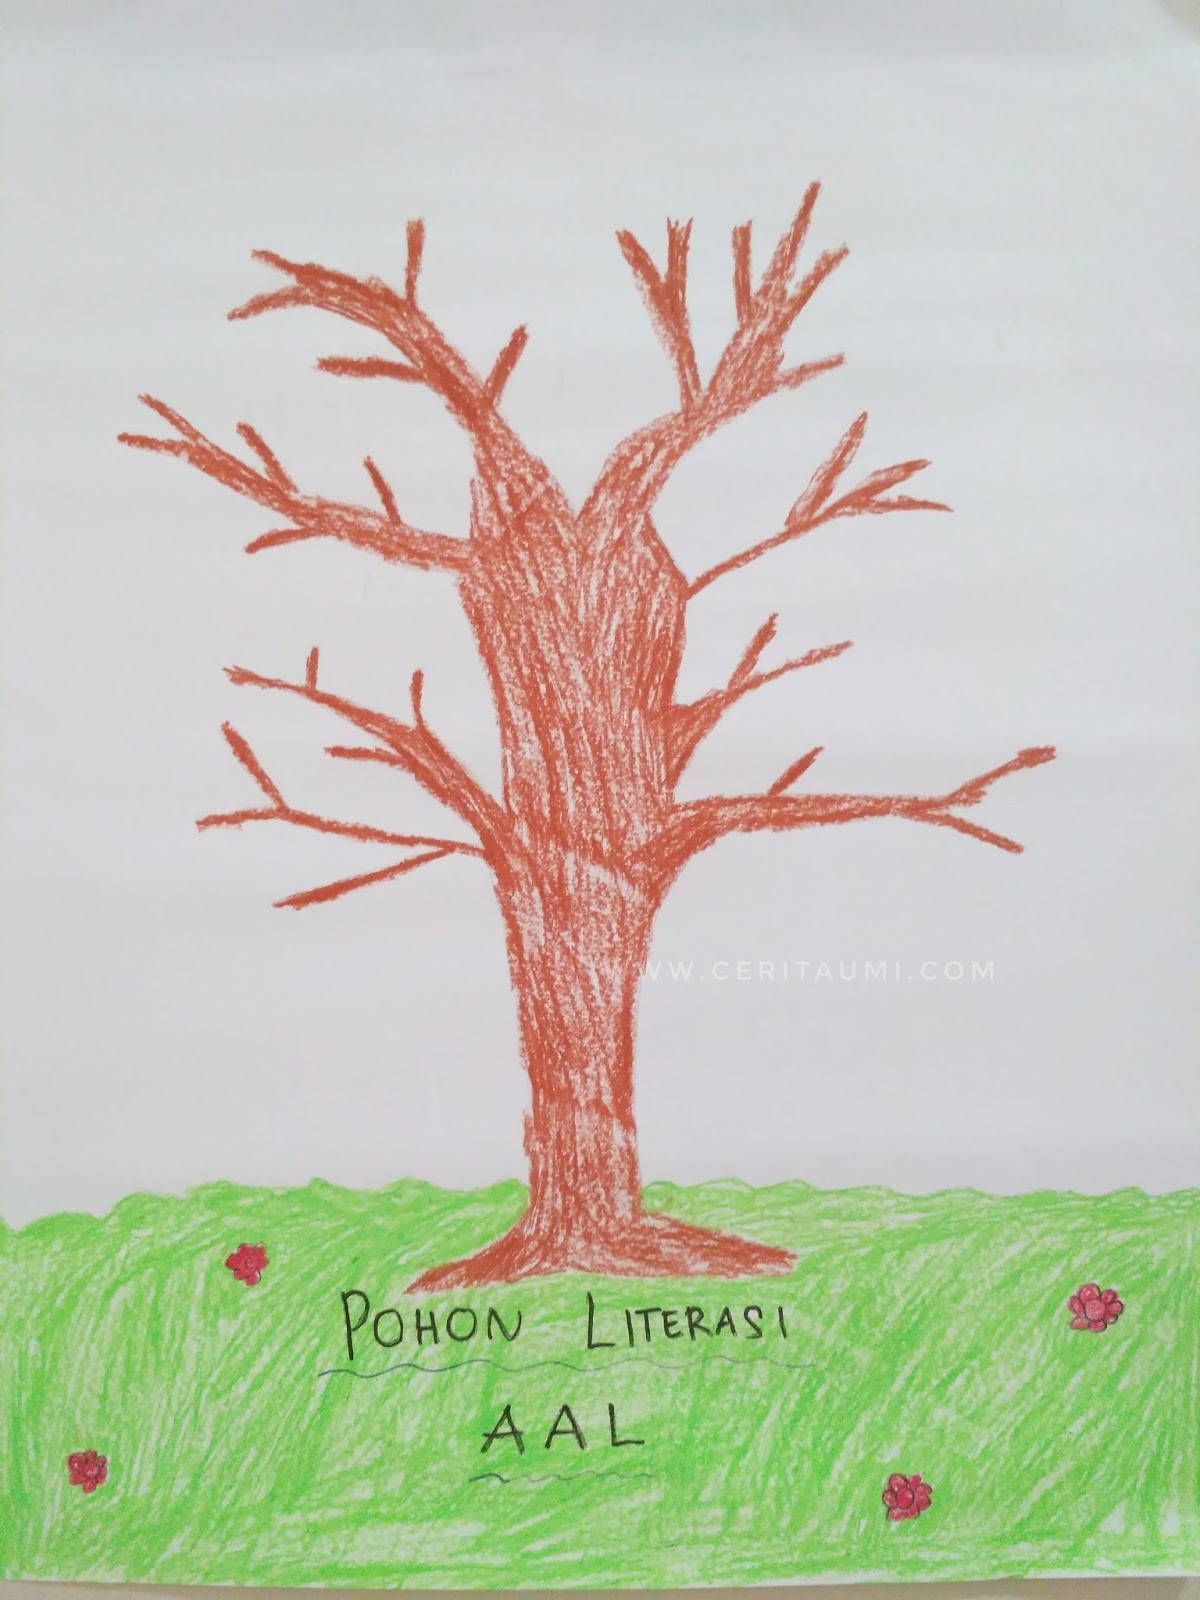 Pohon Literasi